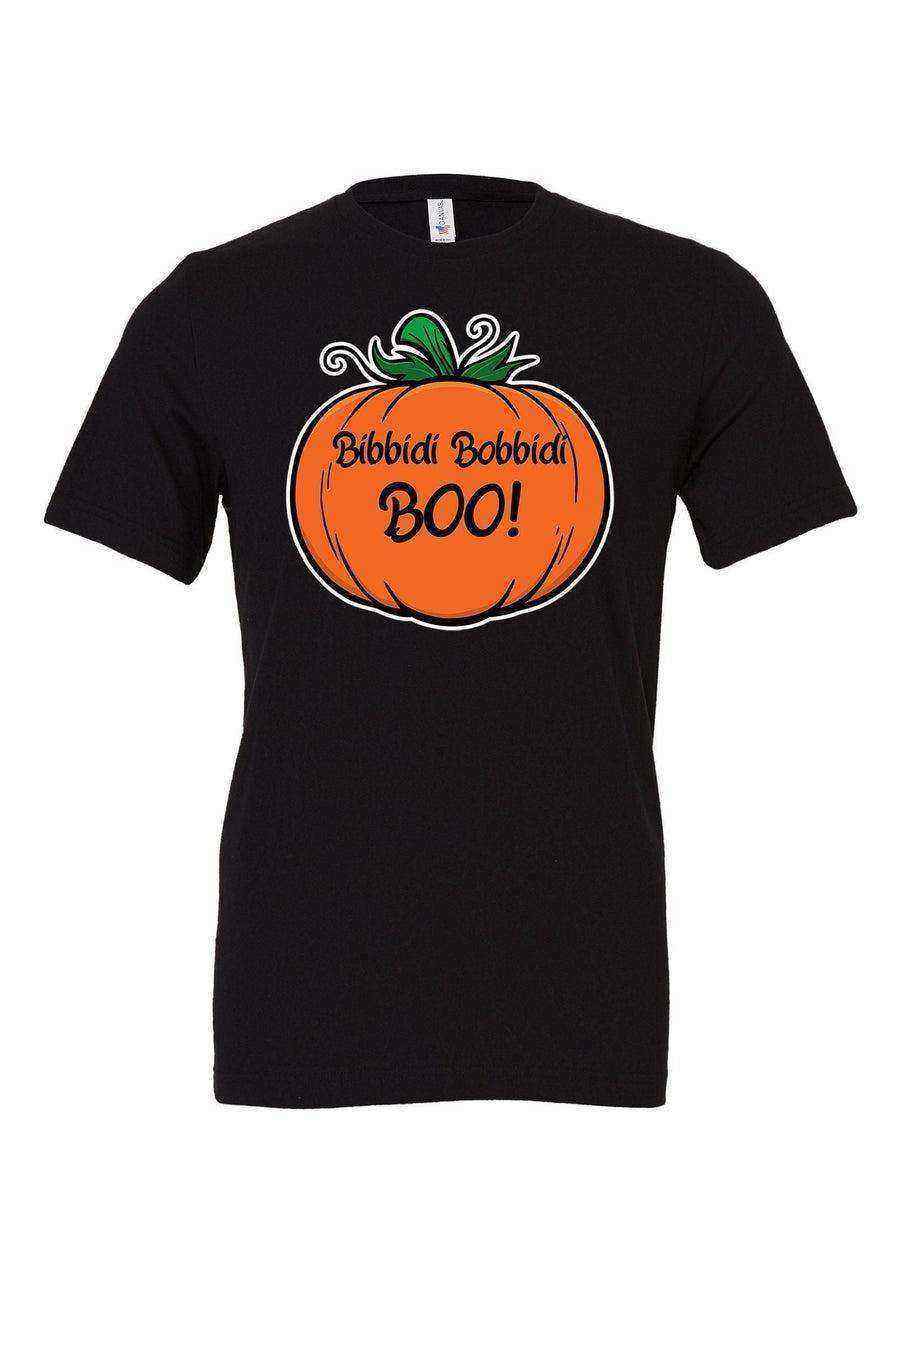 Bibbidi Bobbidi Boo Shirt - Dylan's Tees